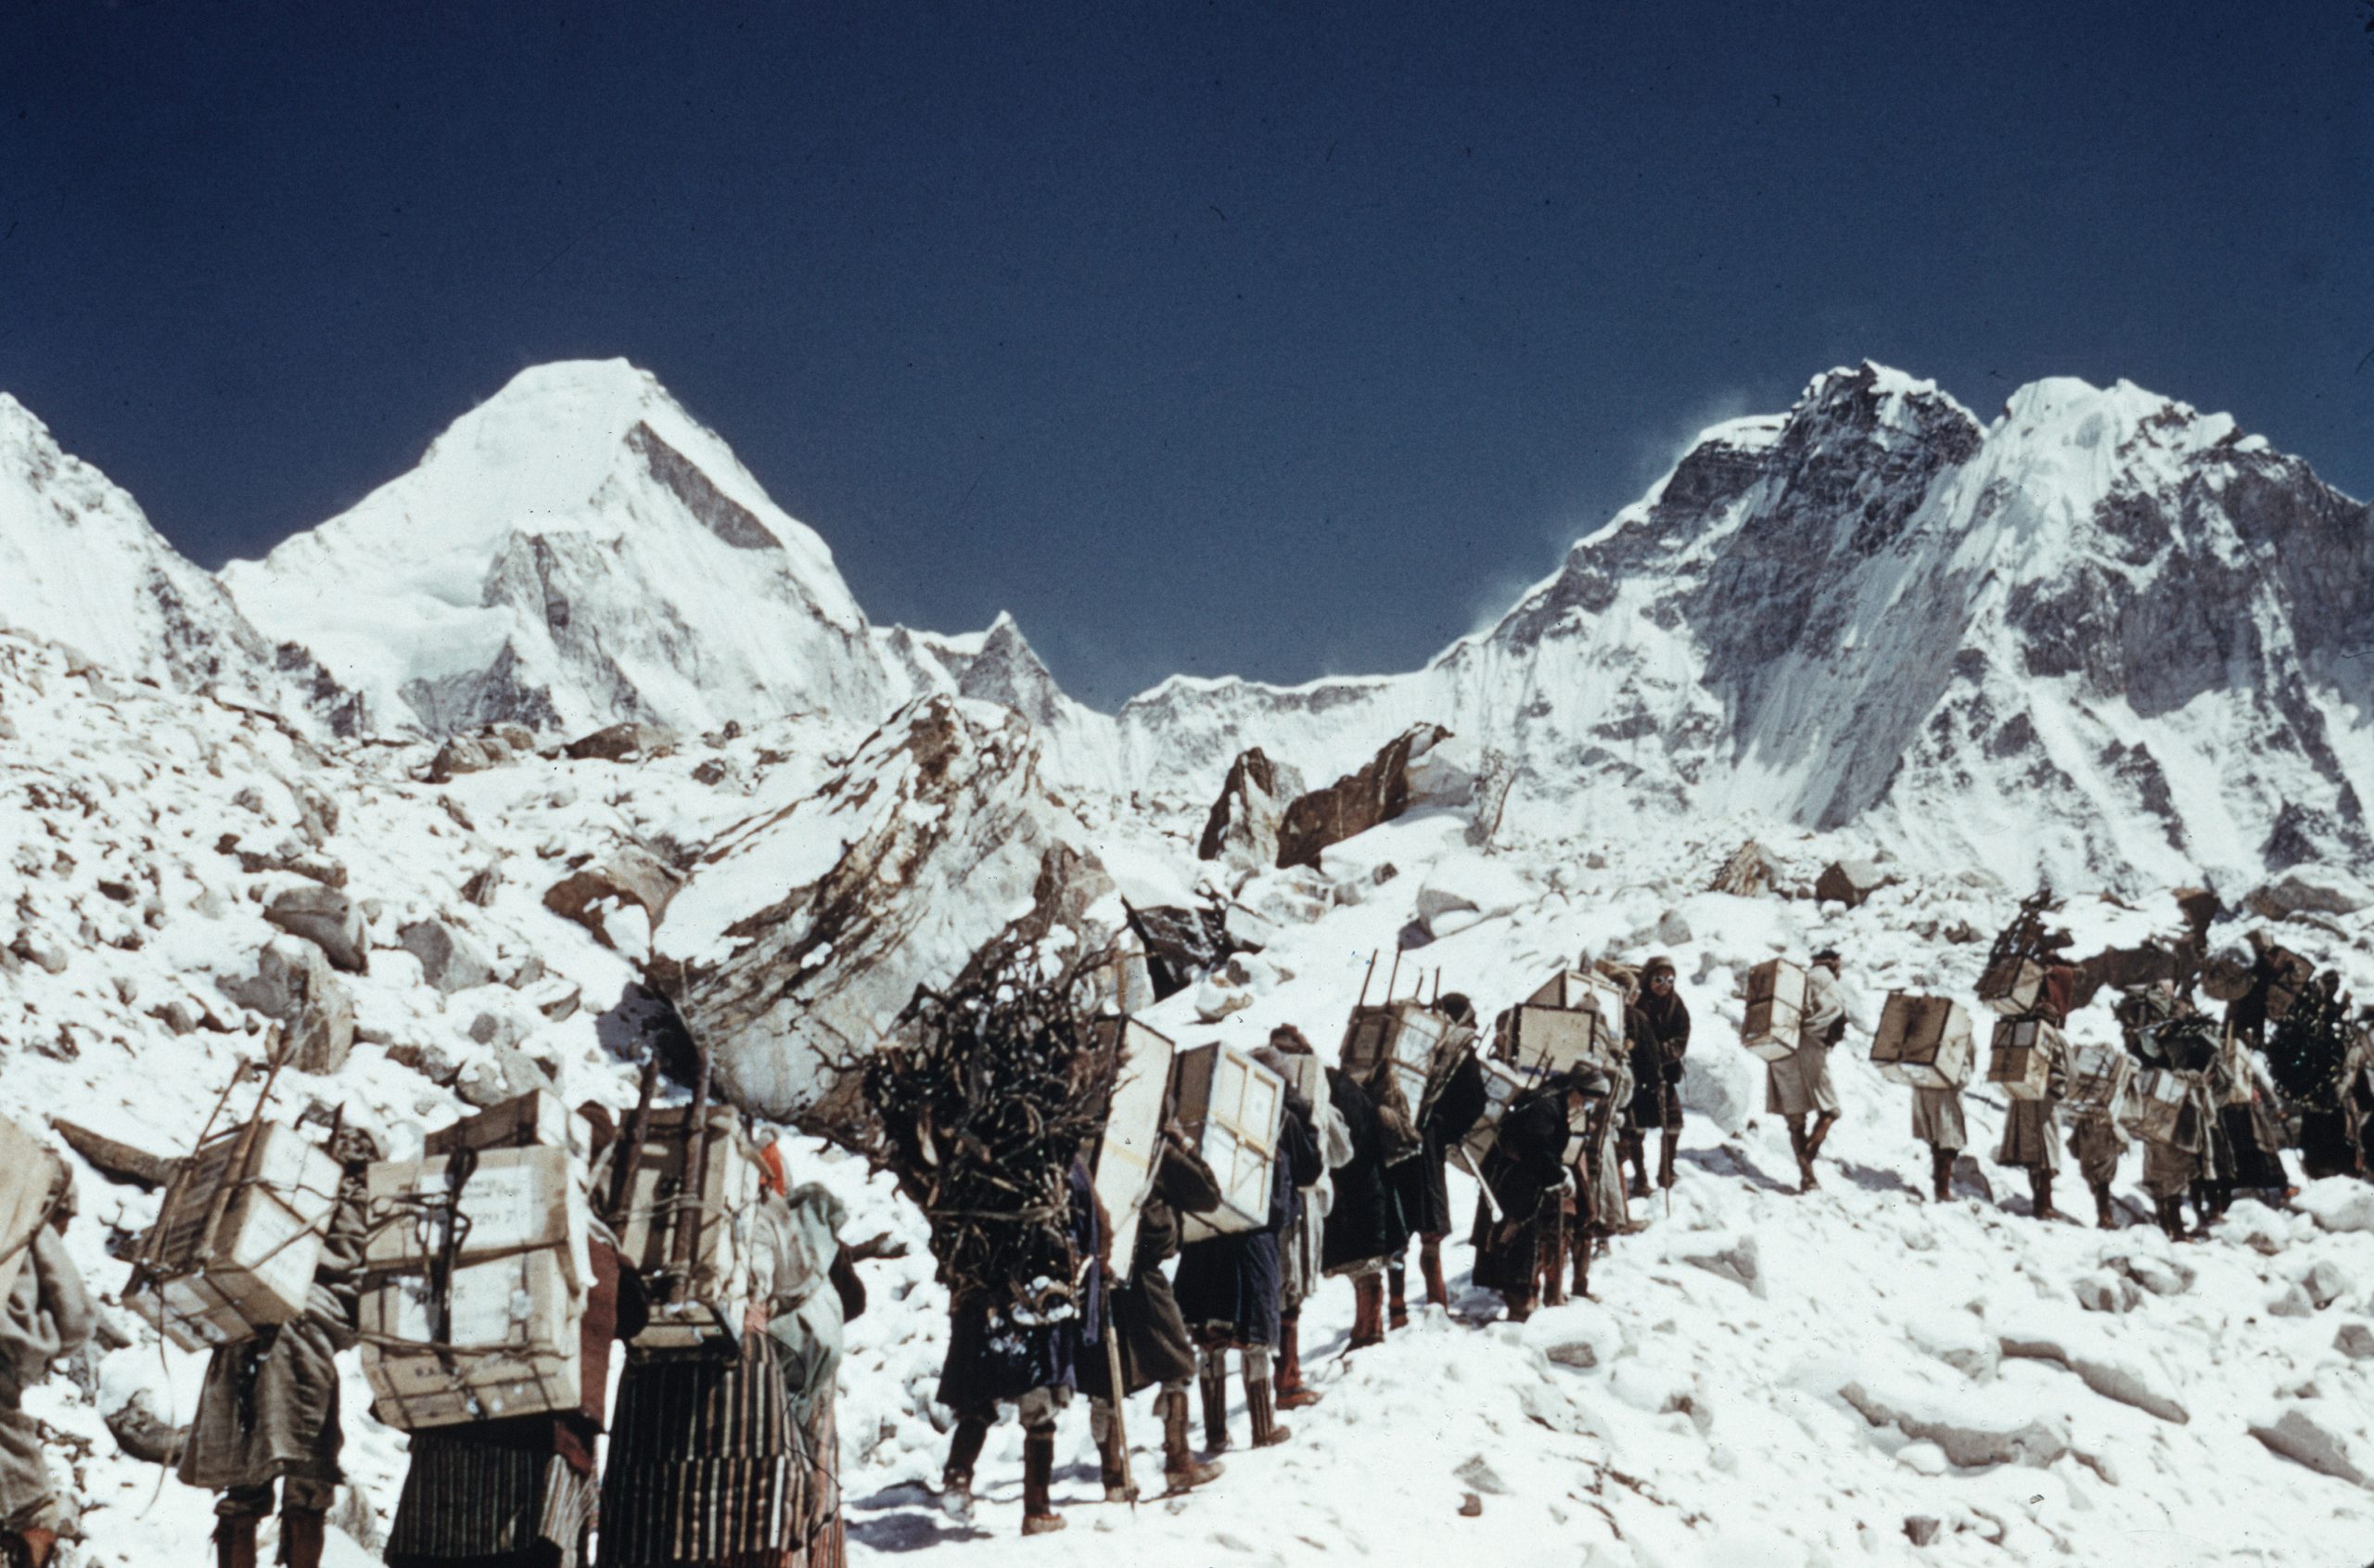 26 marzo 1953. La sosta a Tengboche: meraviglia, lavoro e problemi con gli Sherpa